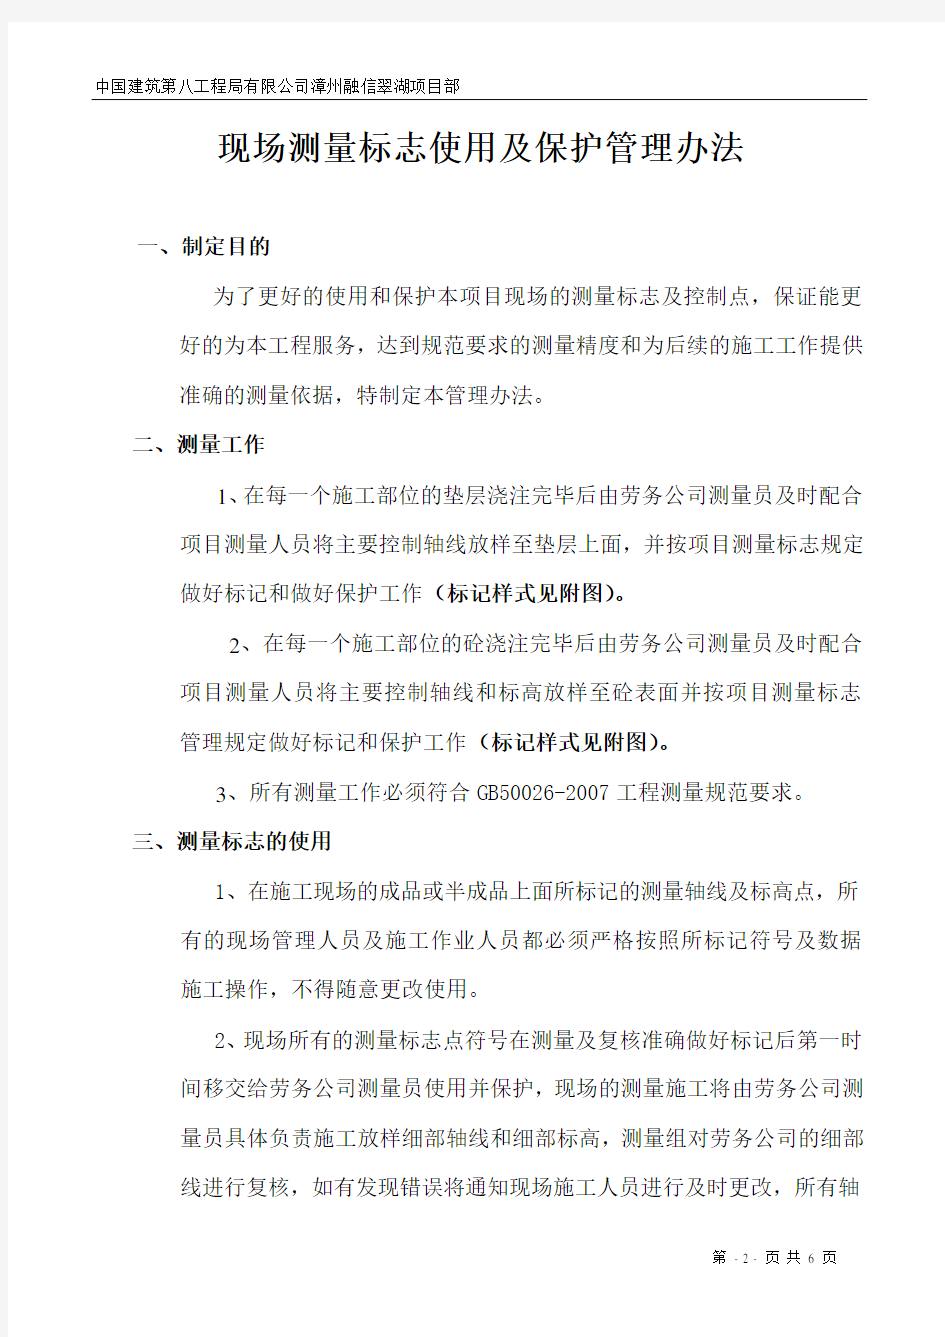 漳州融信翠湖测量标志使用及保护管理规定